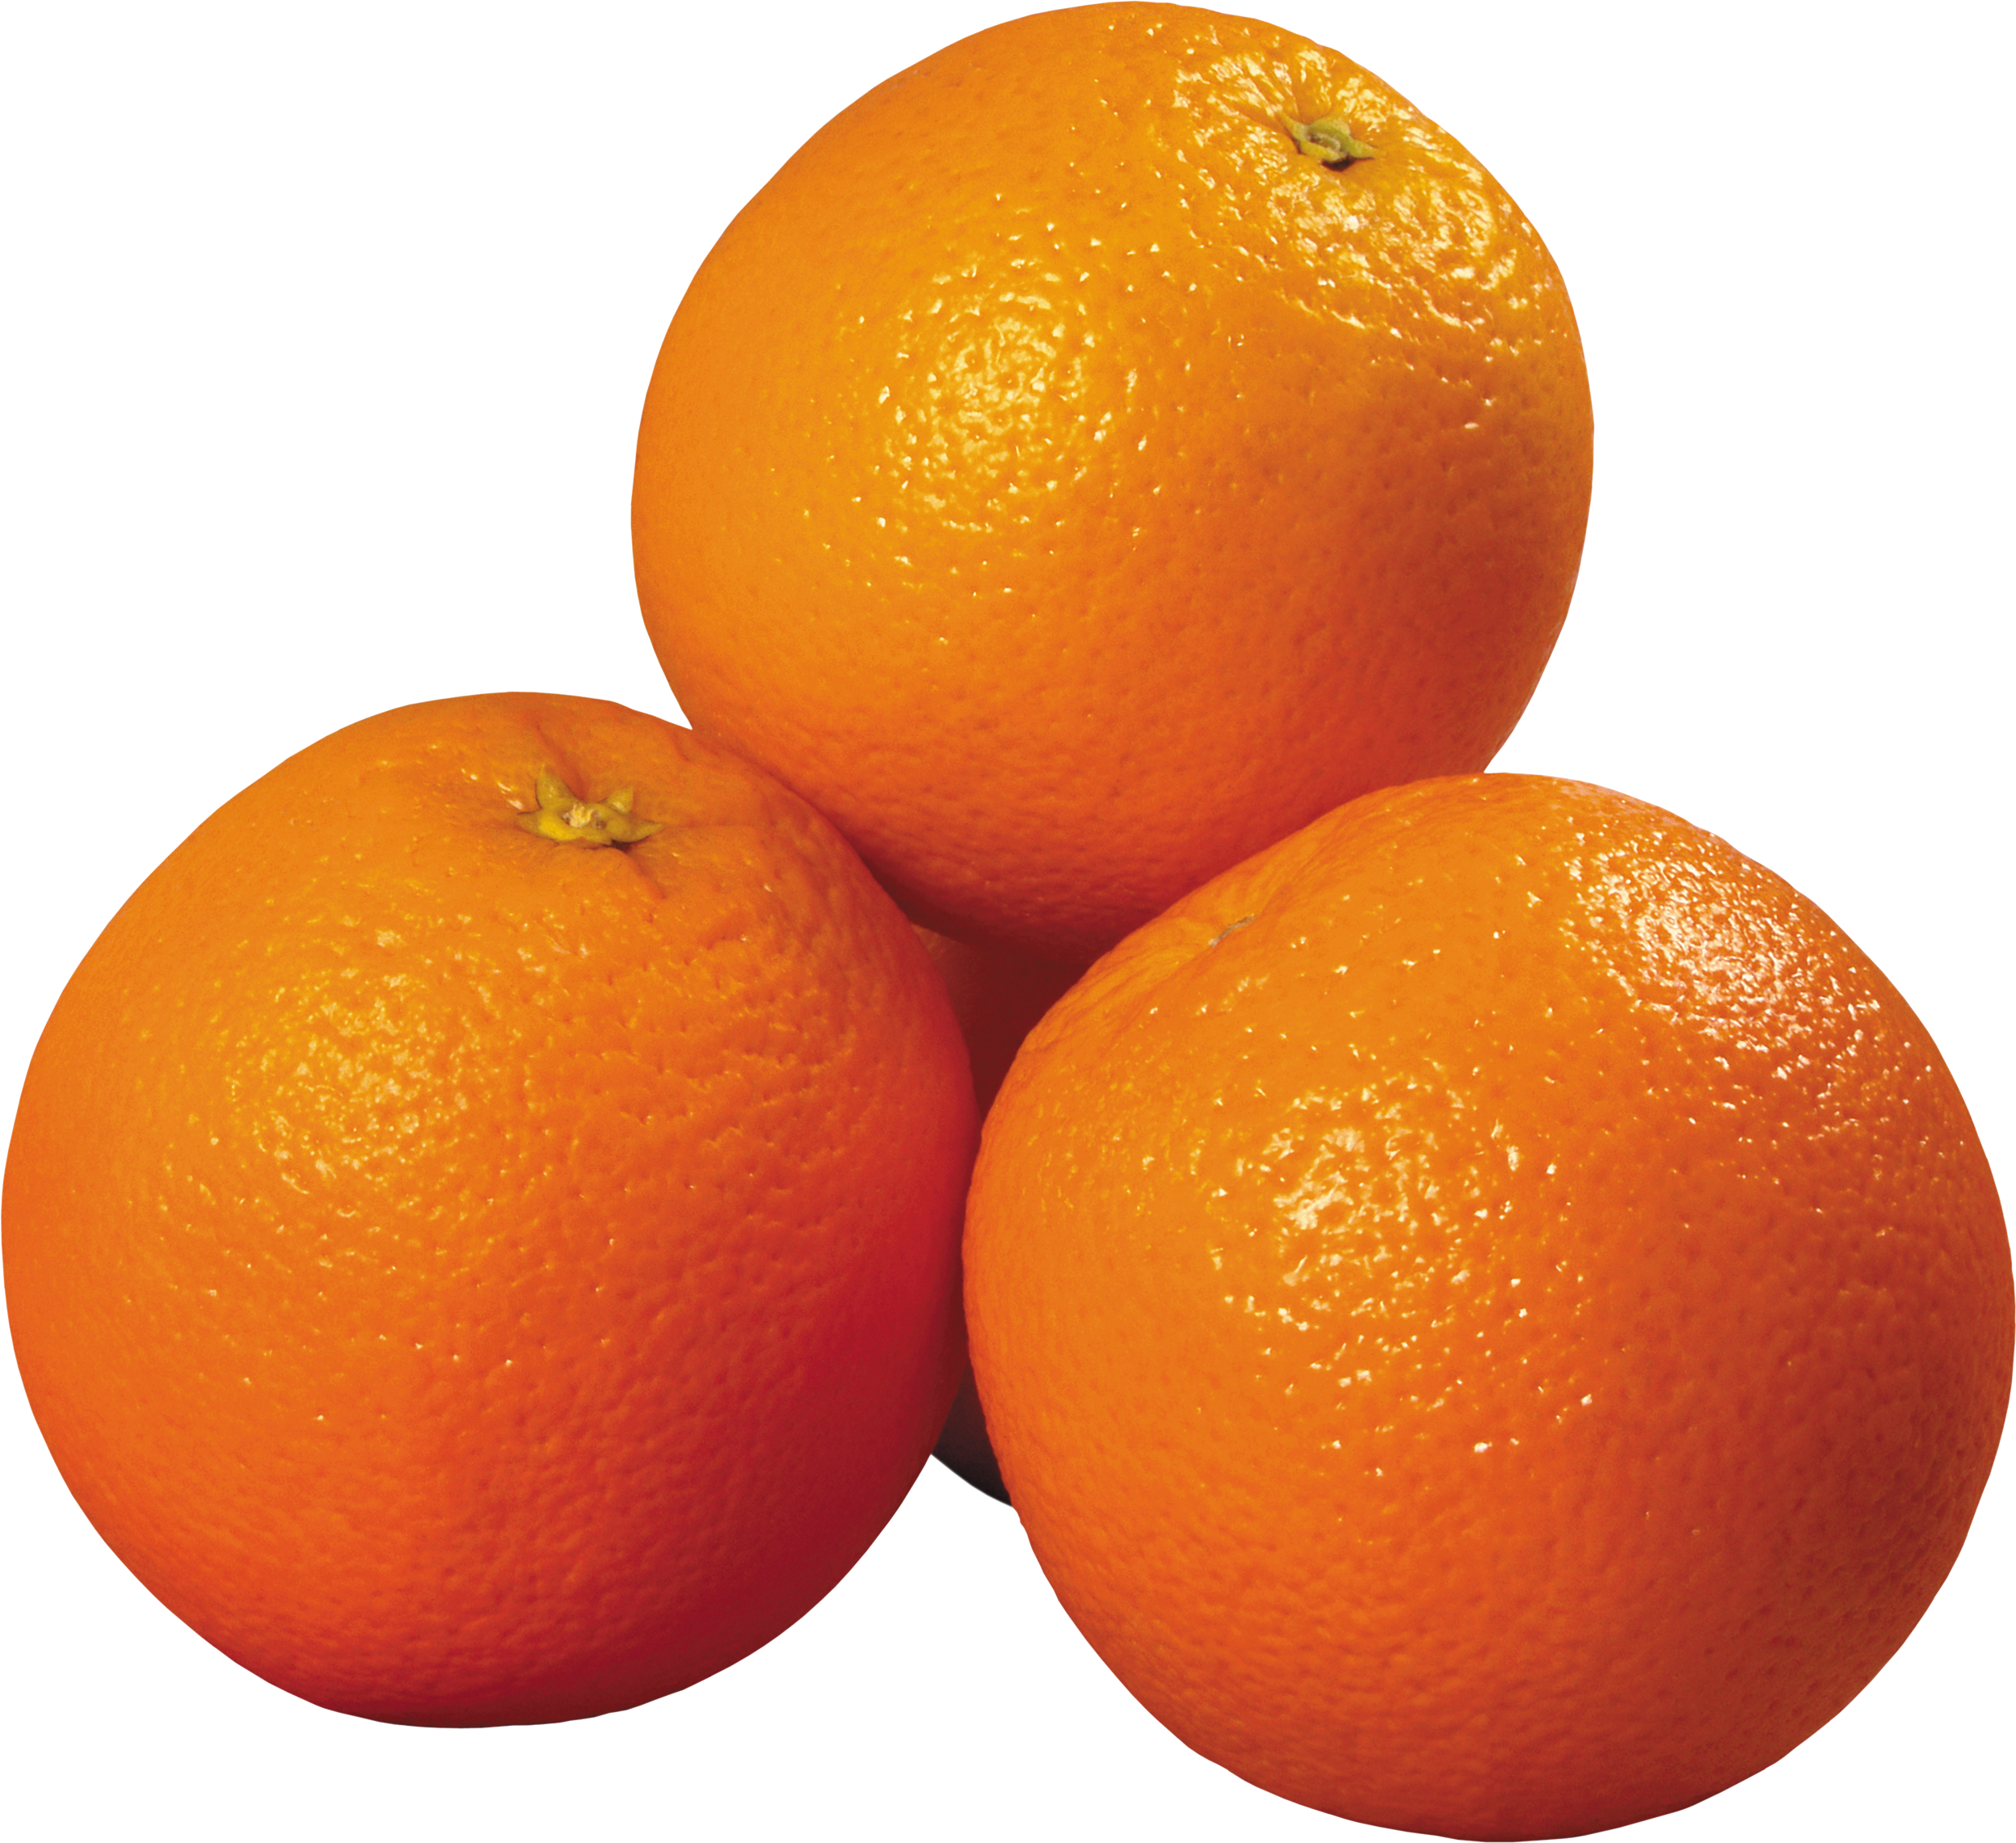 oranges clipart camera